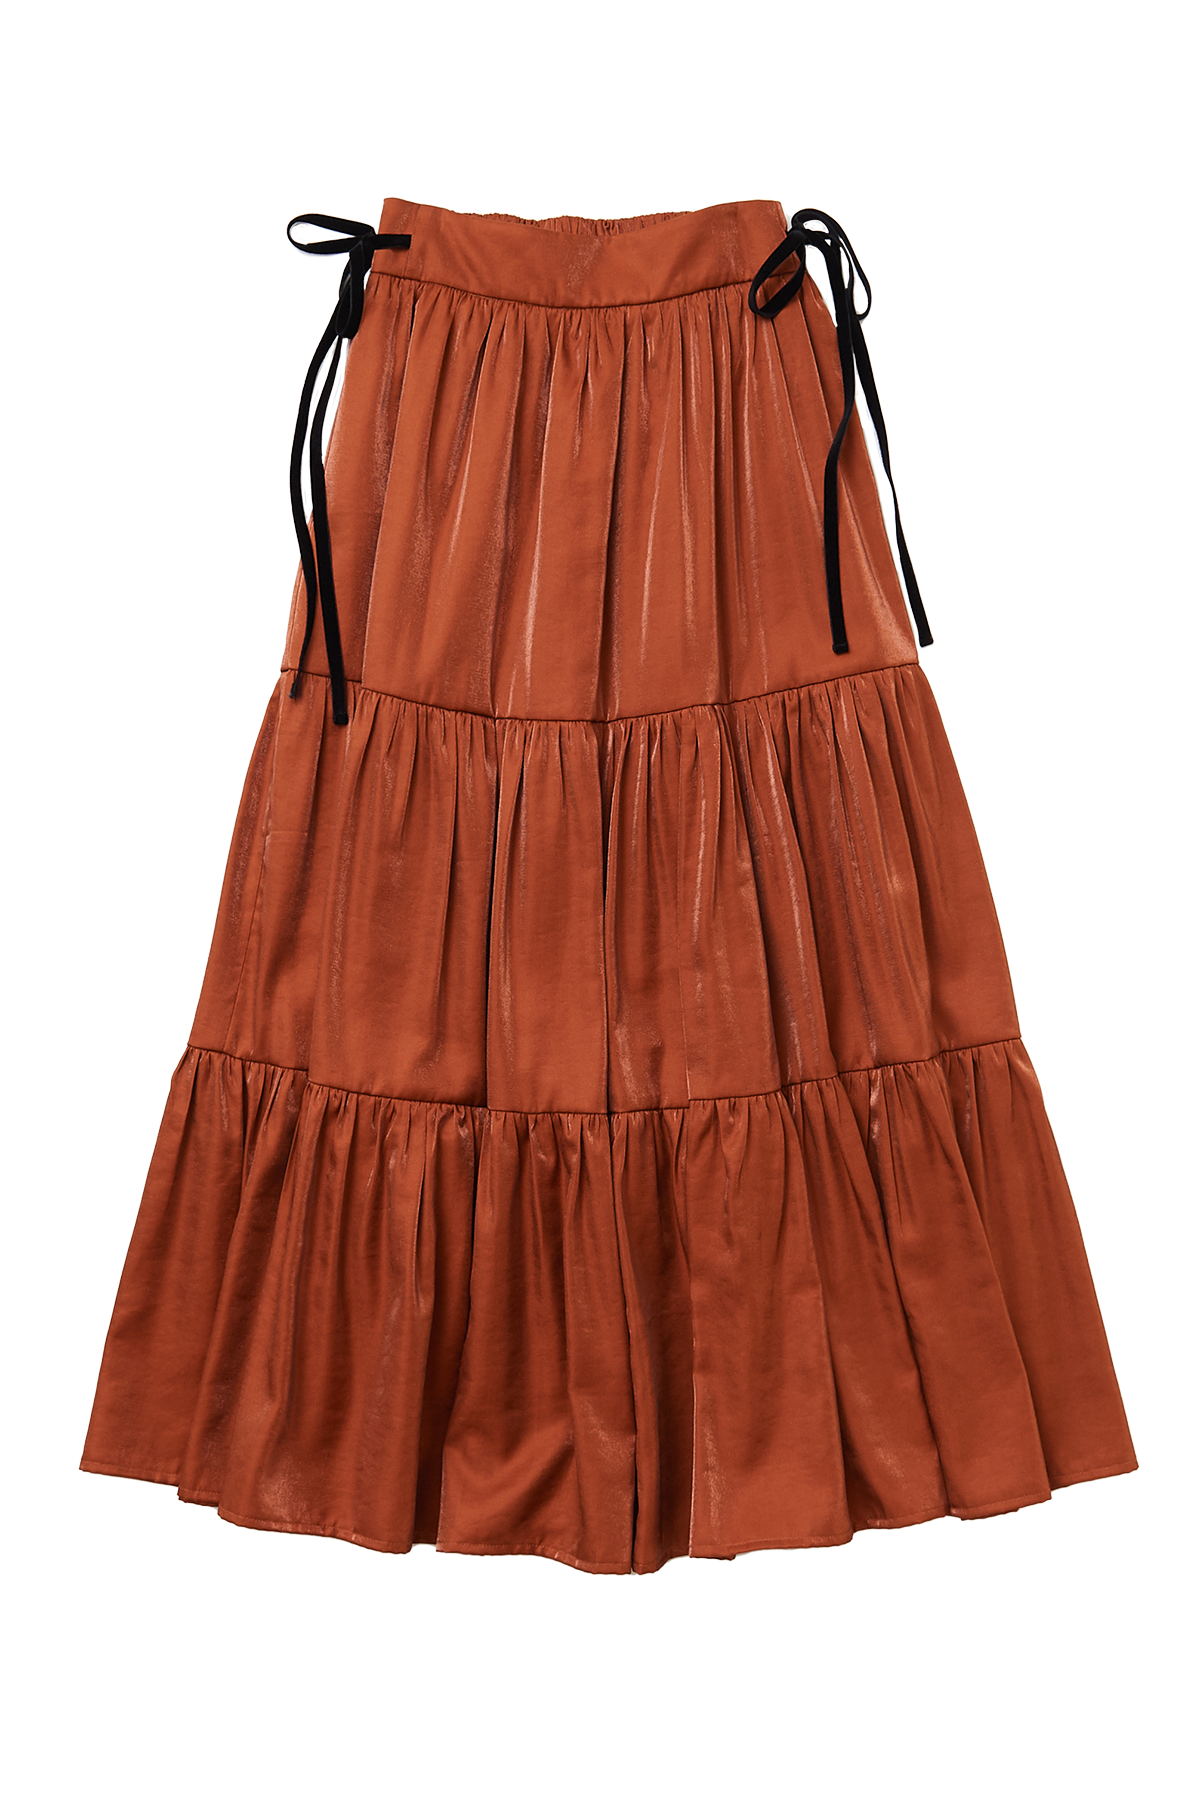 Velvet Ribbon Sparkling Skirt / Orange